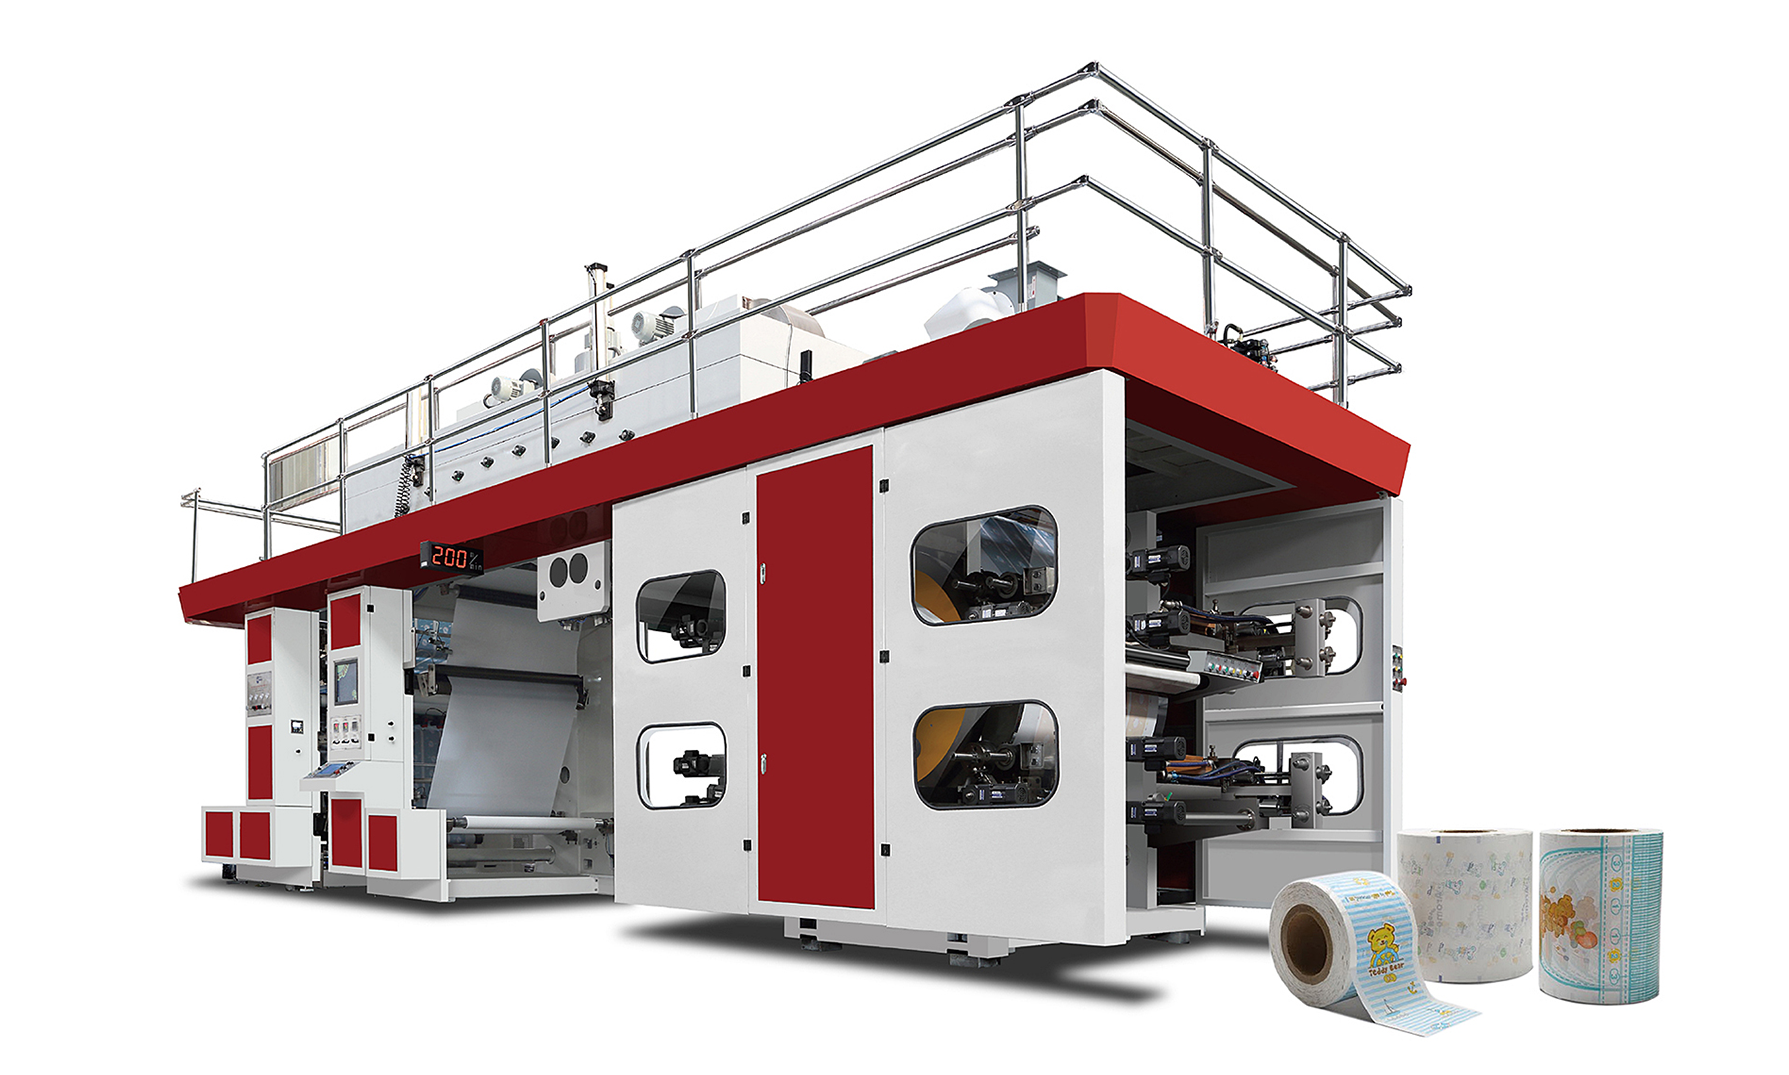 Үйлдвэрийн нийлүүлэлт өндөр нарийвчлалтай Ci Flexo хэвлэлийн машин